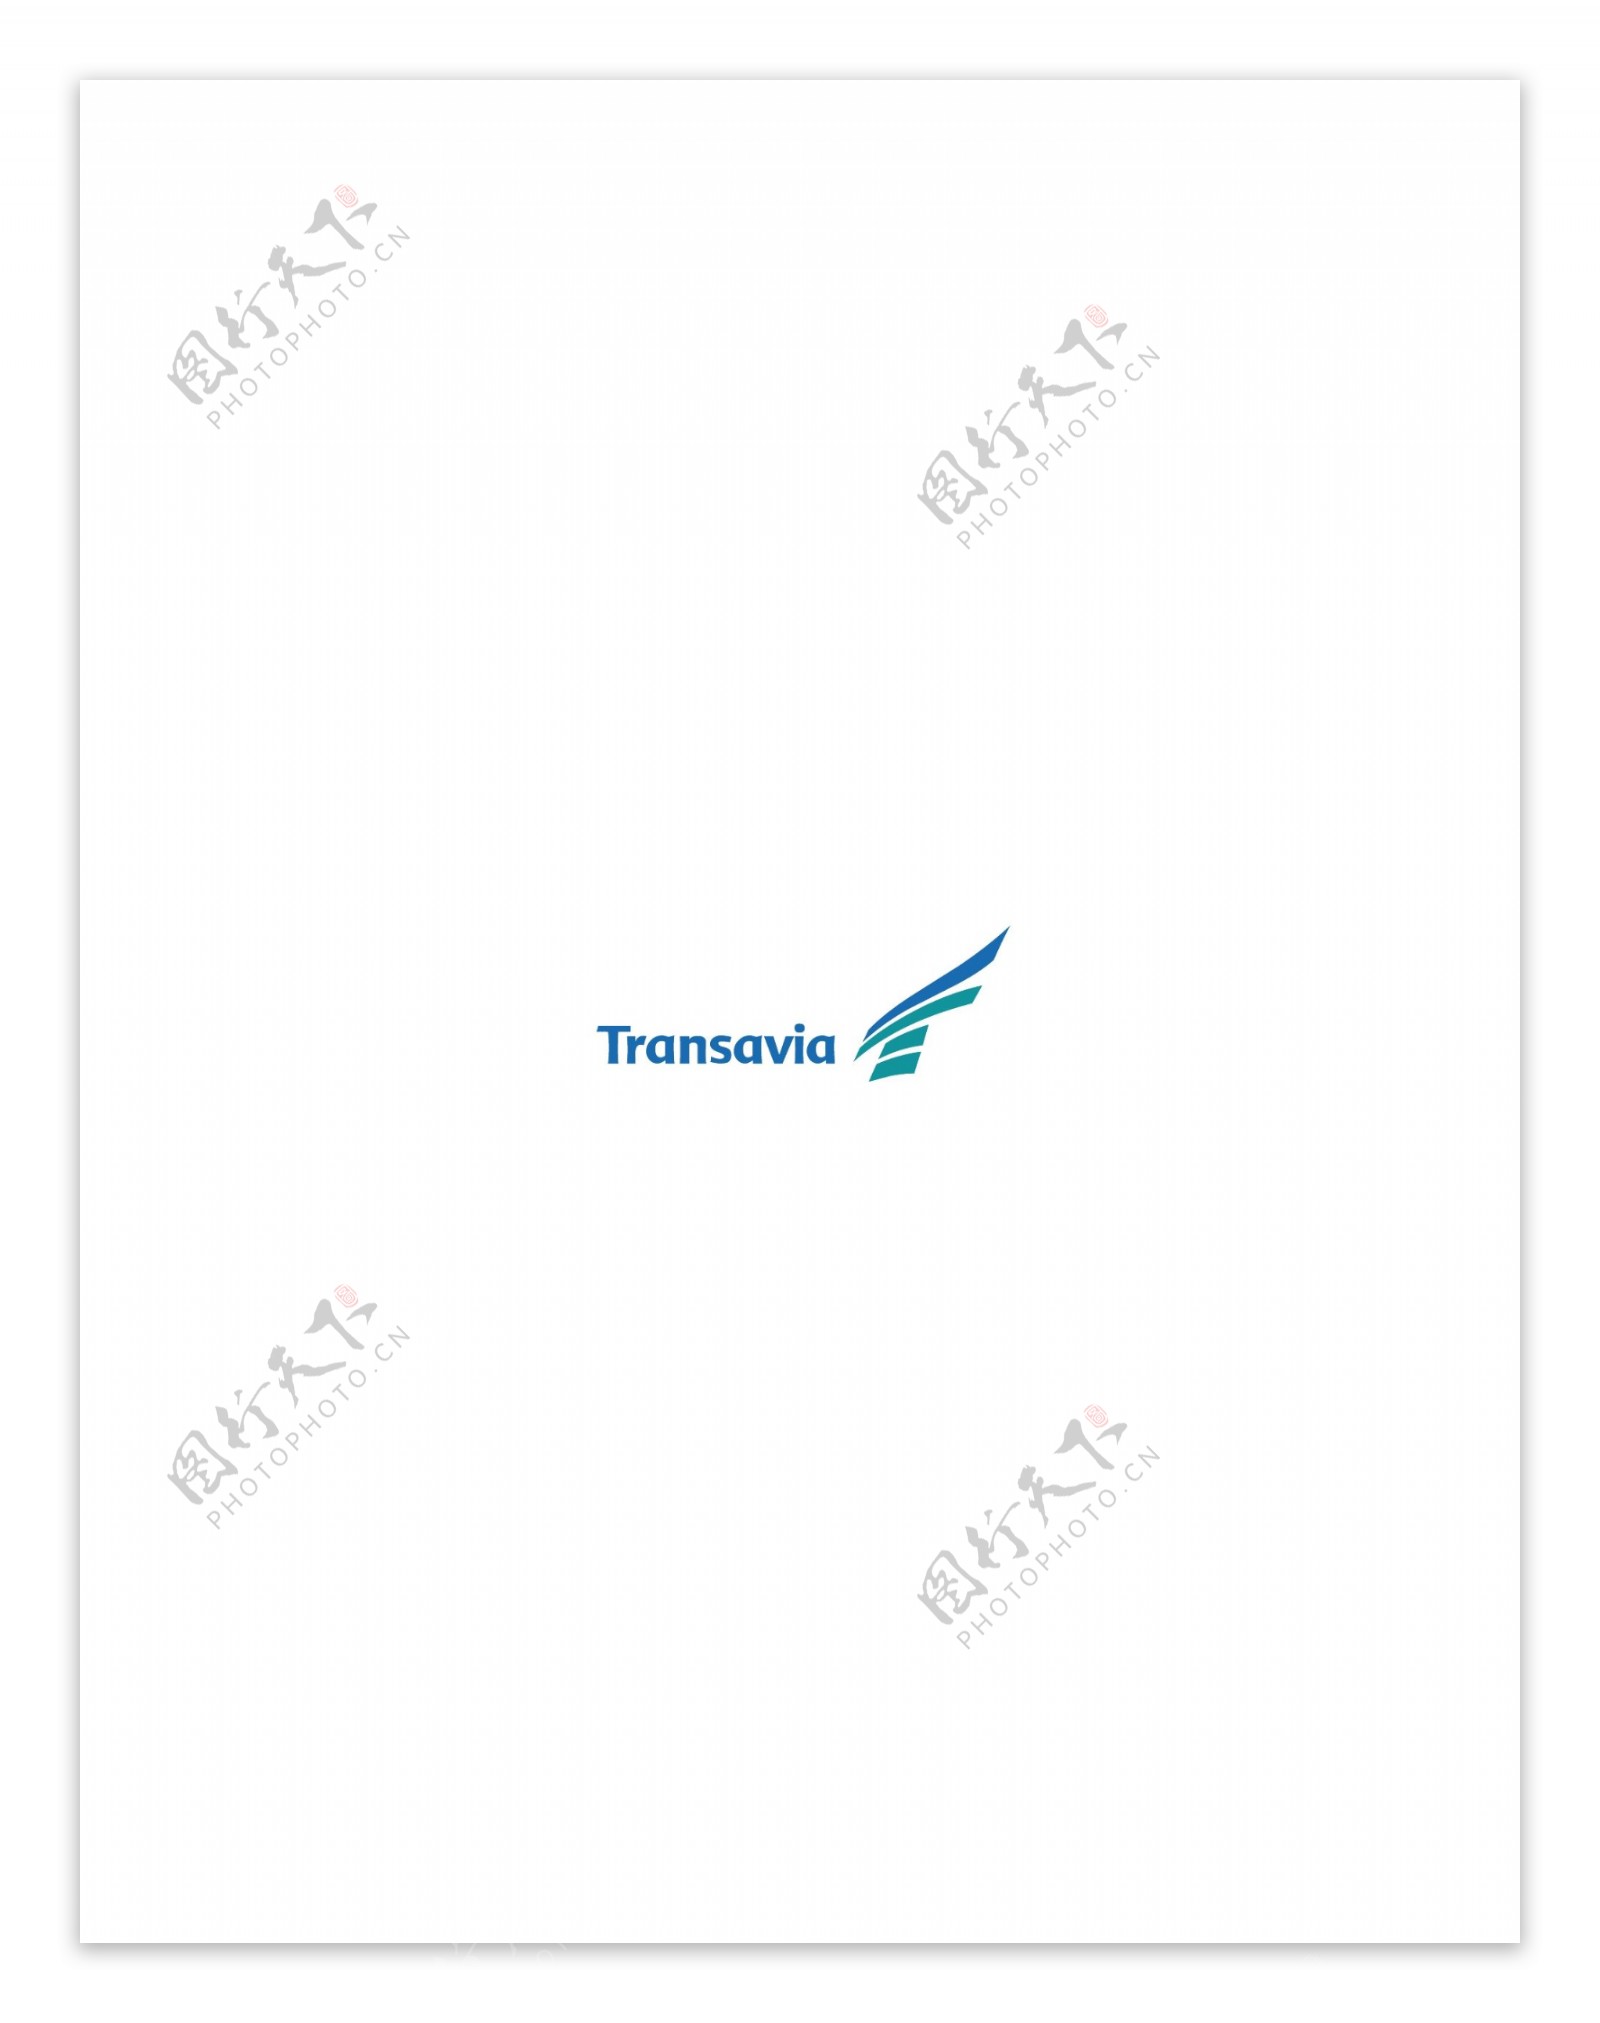 TransaviaAirlines1logo设计欣赏TransaviaAirlines1航空标志下载标志设计欣赏